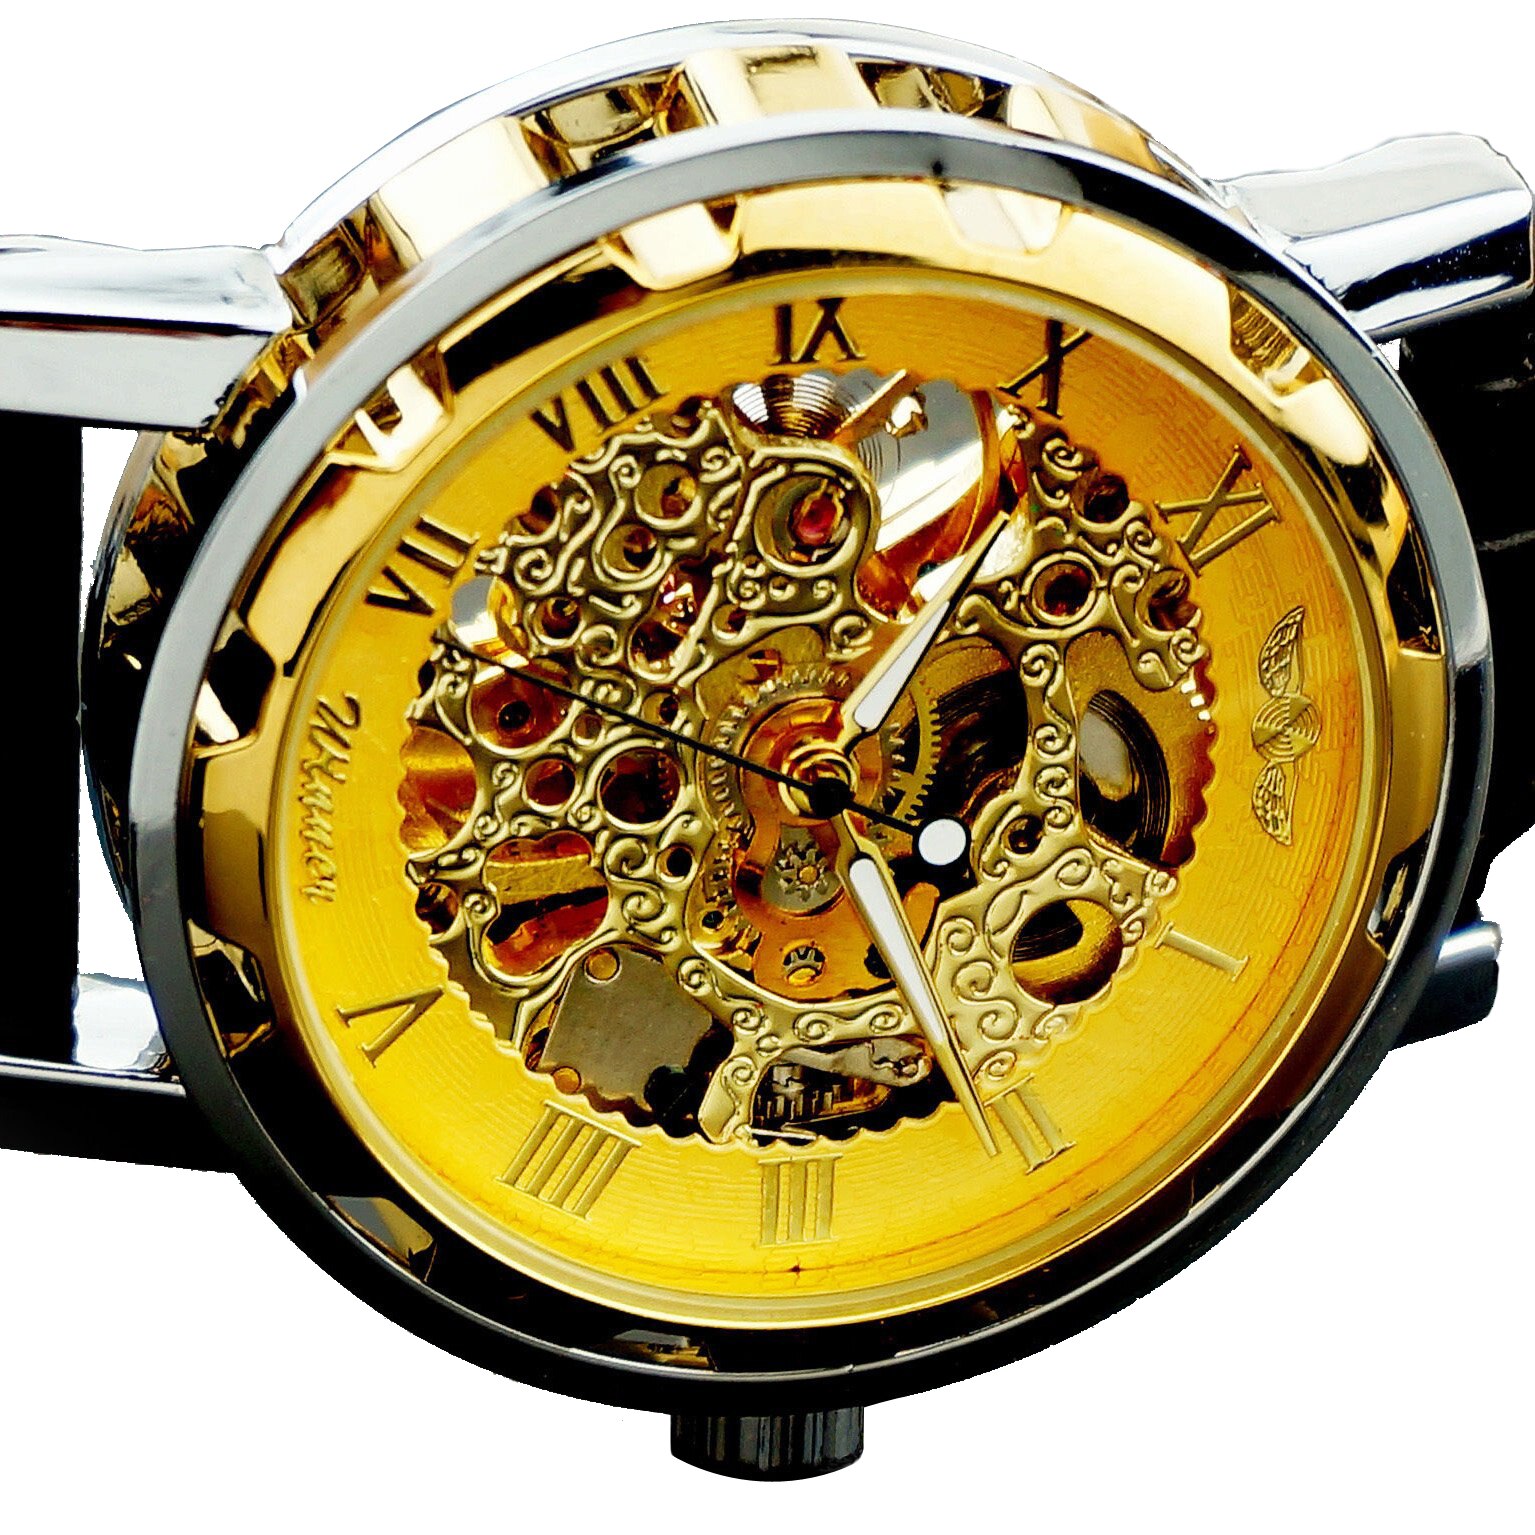 Winnaar Mens-Self-Winding Mechanische Horloge-Lederen Armband Horloge-Golden